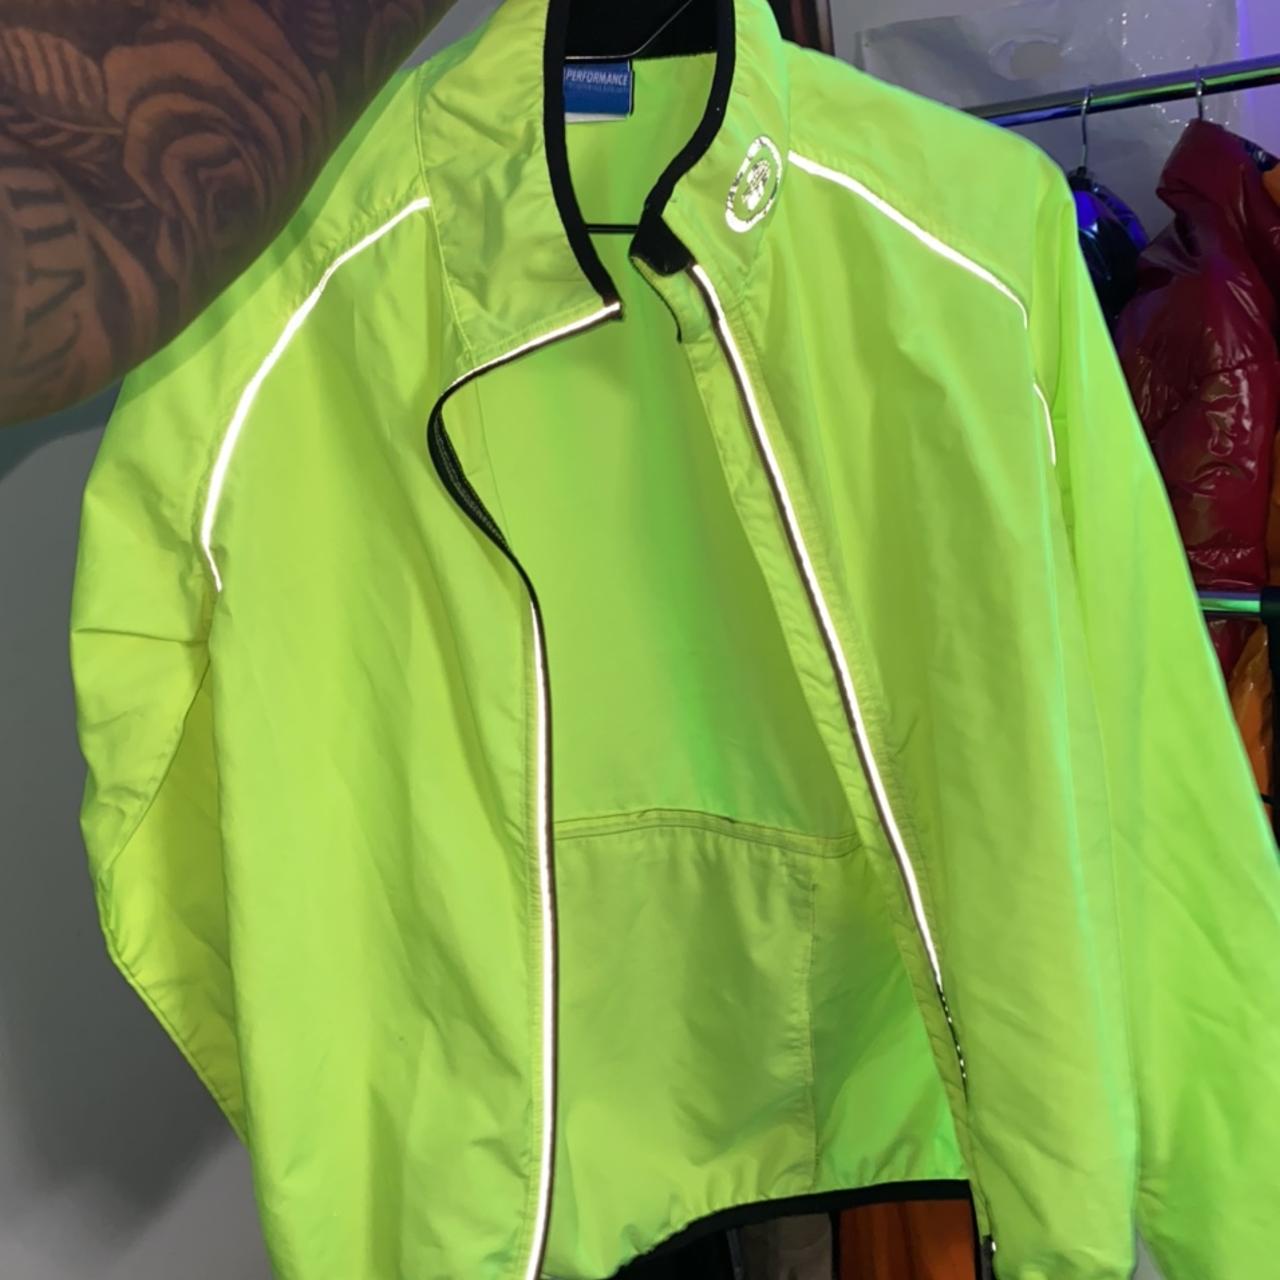 Men’s (light jacket) Size : medium Condition :... - Depop